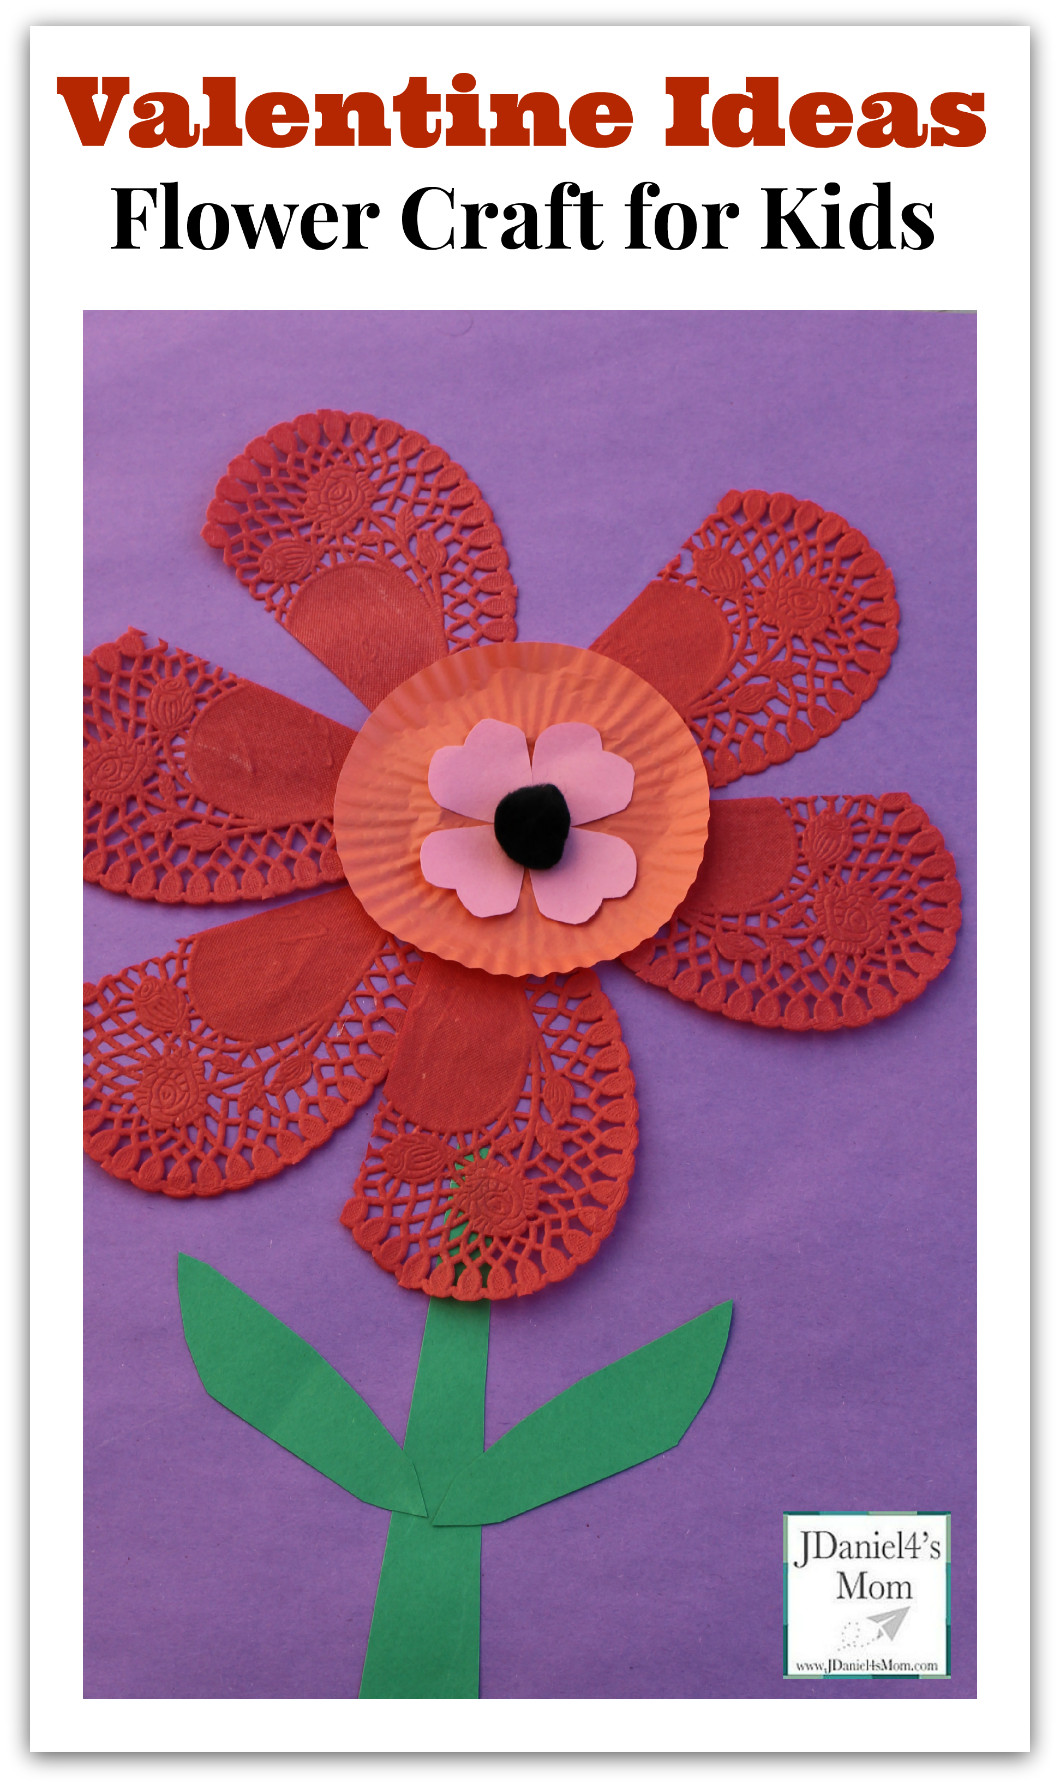 Valentine Kids Craft Ideas
 Valentine Ideas Flower Craft for Kids